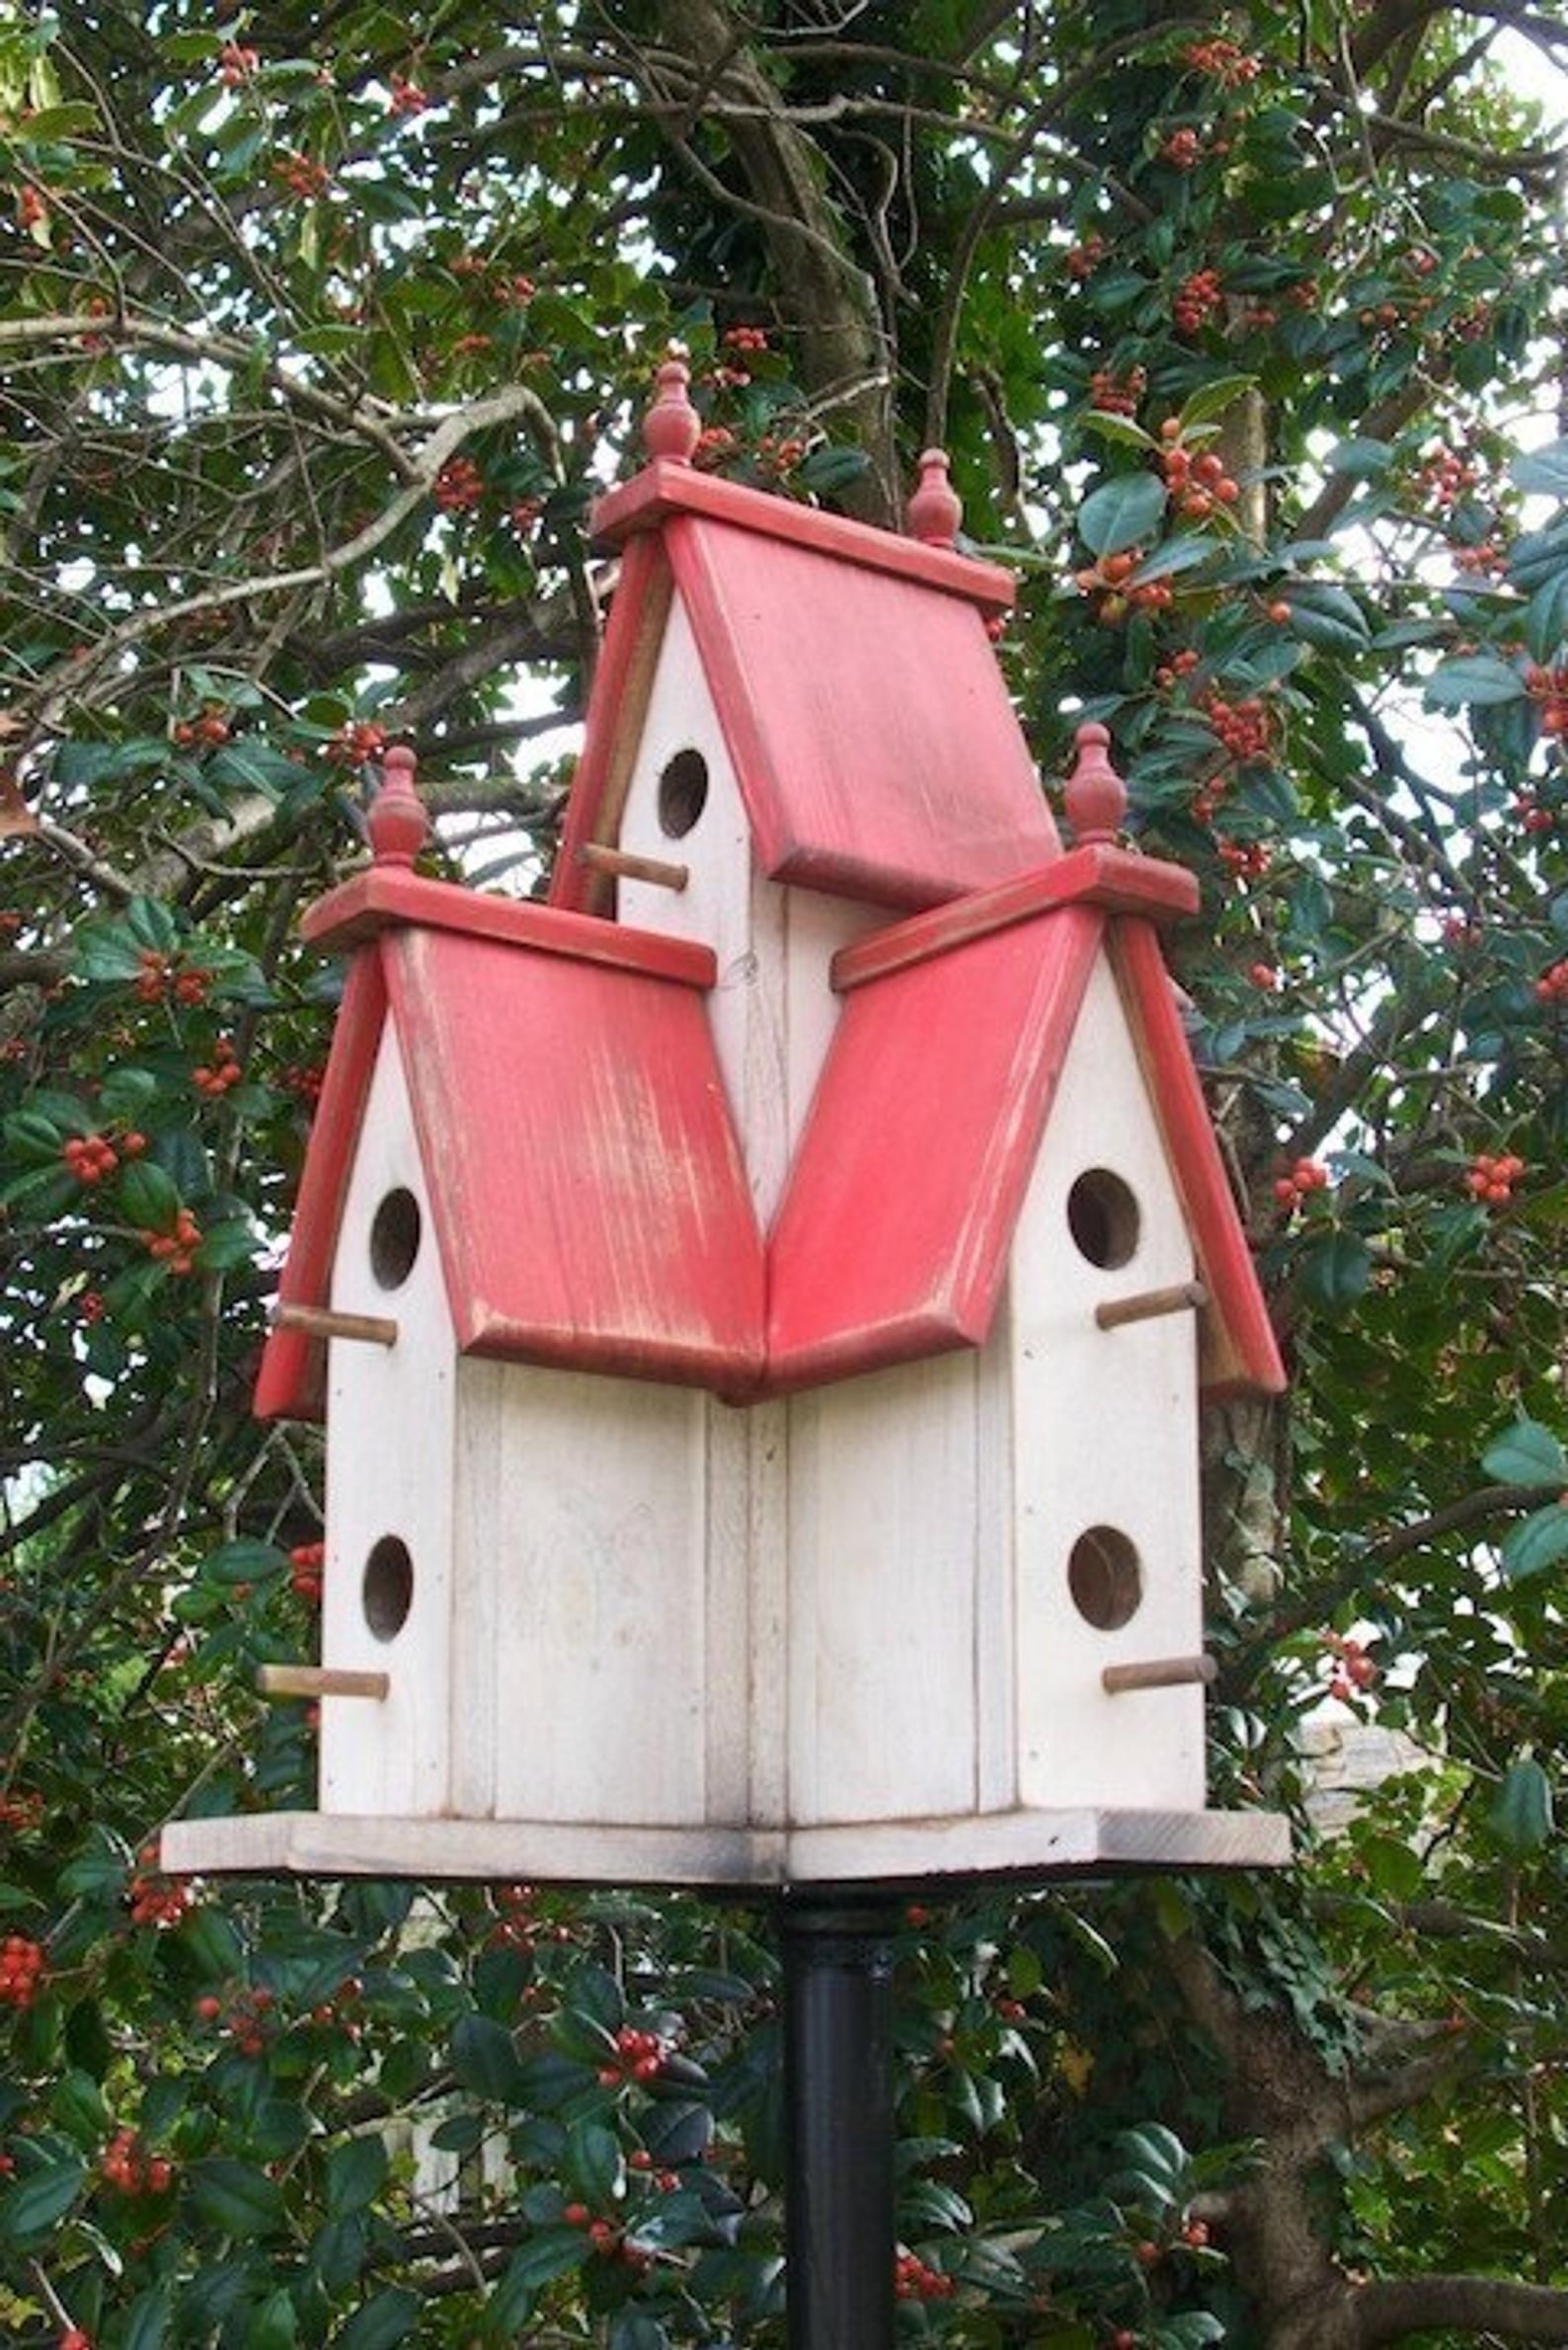 Big birdhouse